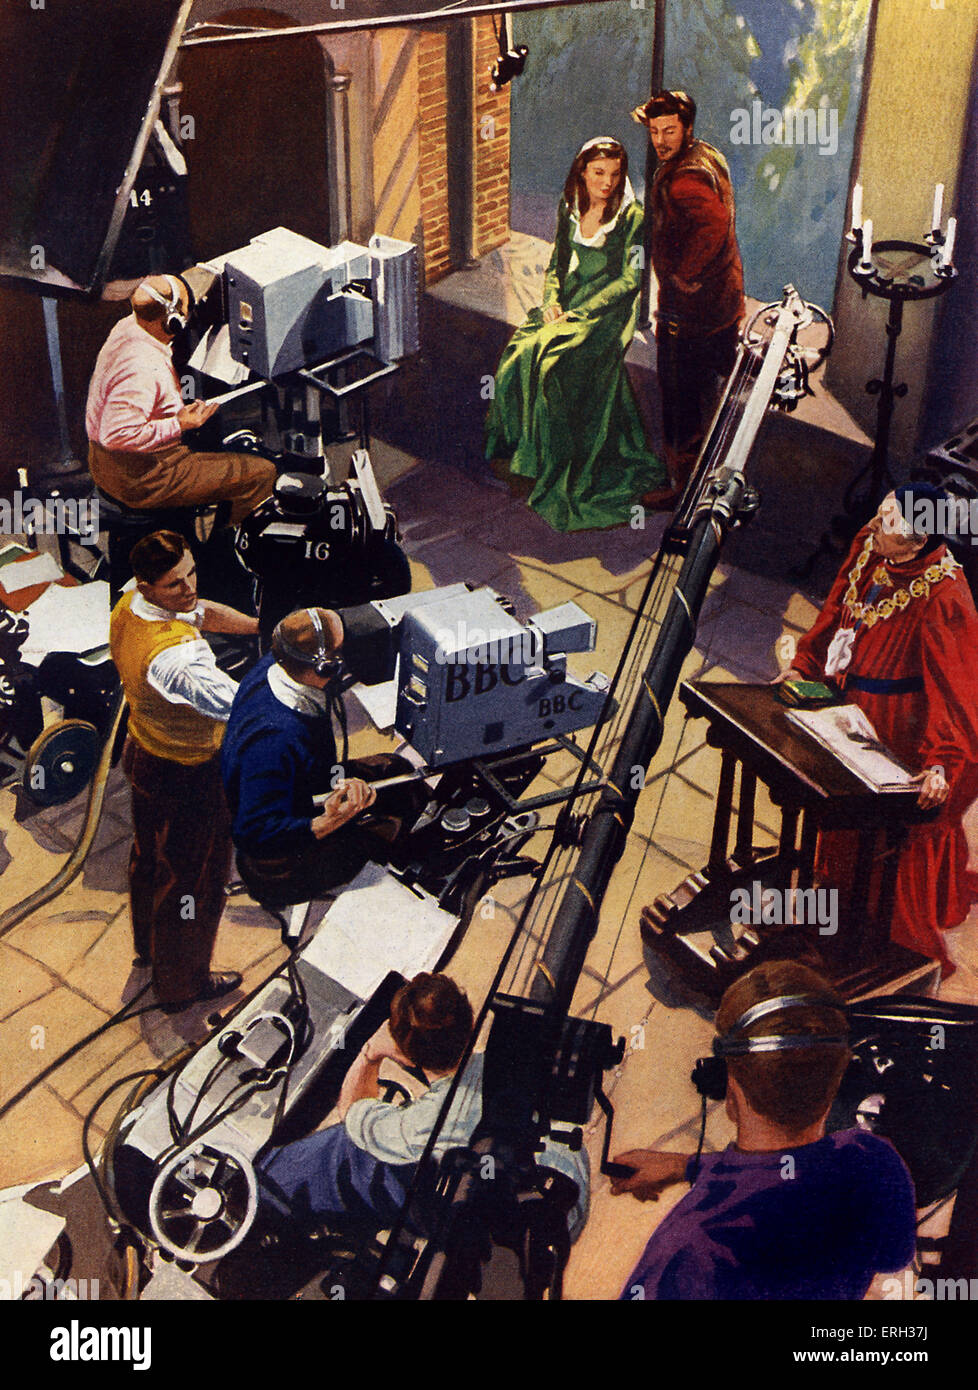 Il BBC Television studio, agli inizi degli anni cinquanta. Troupe, boom microfoni, attori nel dramma shakespeariano. Illustrazione da sconosciuto Foto Stock